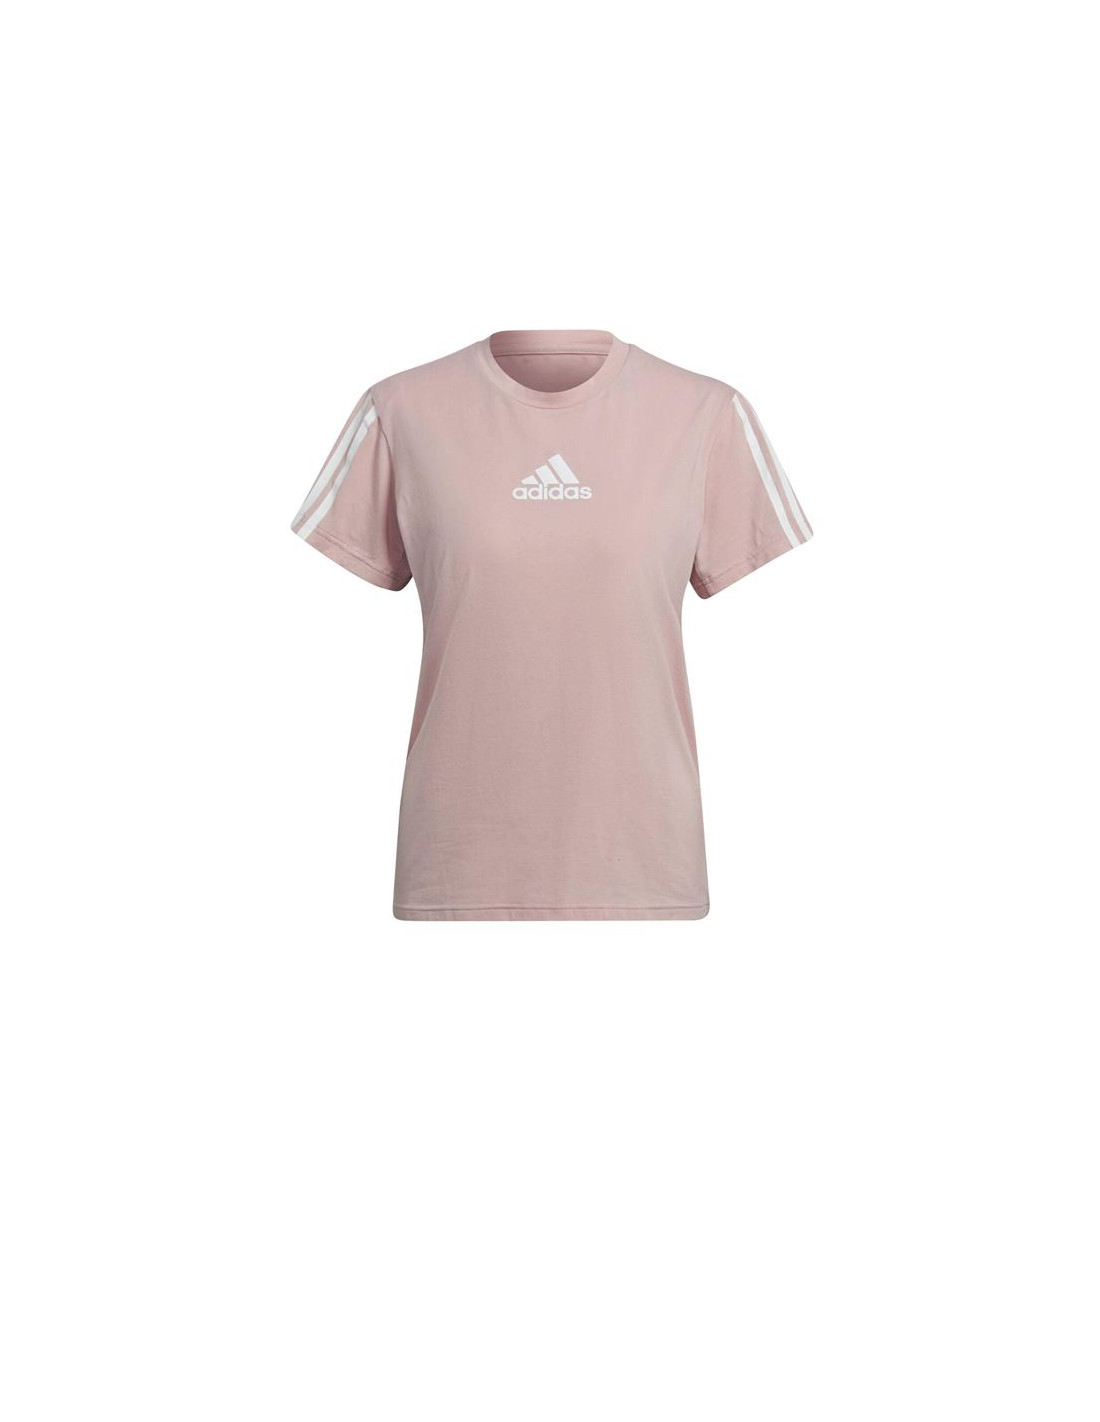 Camiseta de manga corta adidas aeroready mujer pink